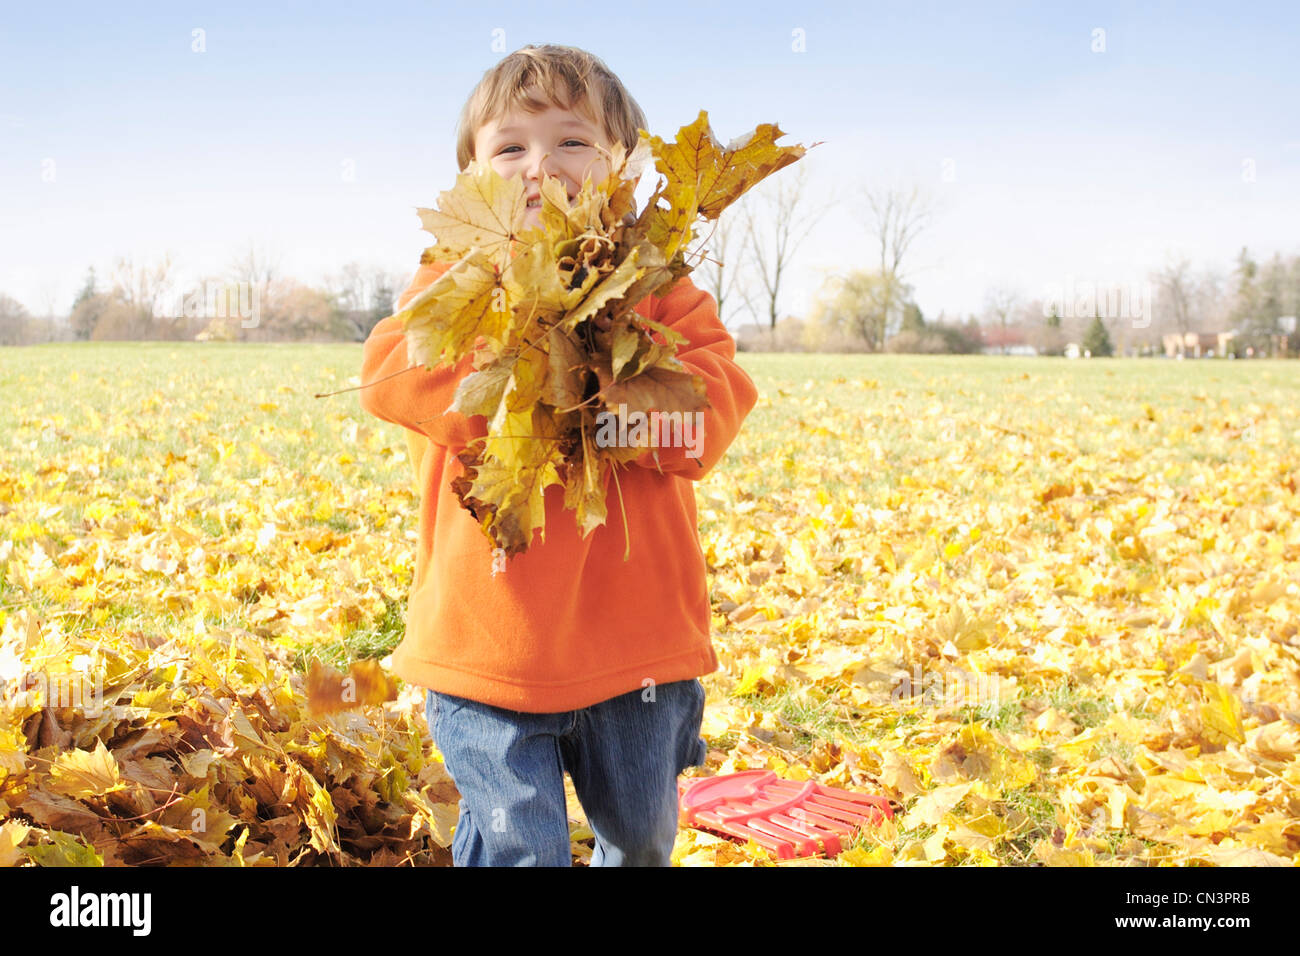 Jeune garçon jouant dans les feuilles d'automne, Aurora (Ontario) Banque D'Images